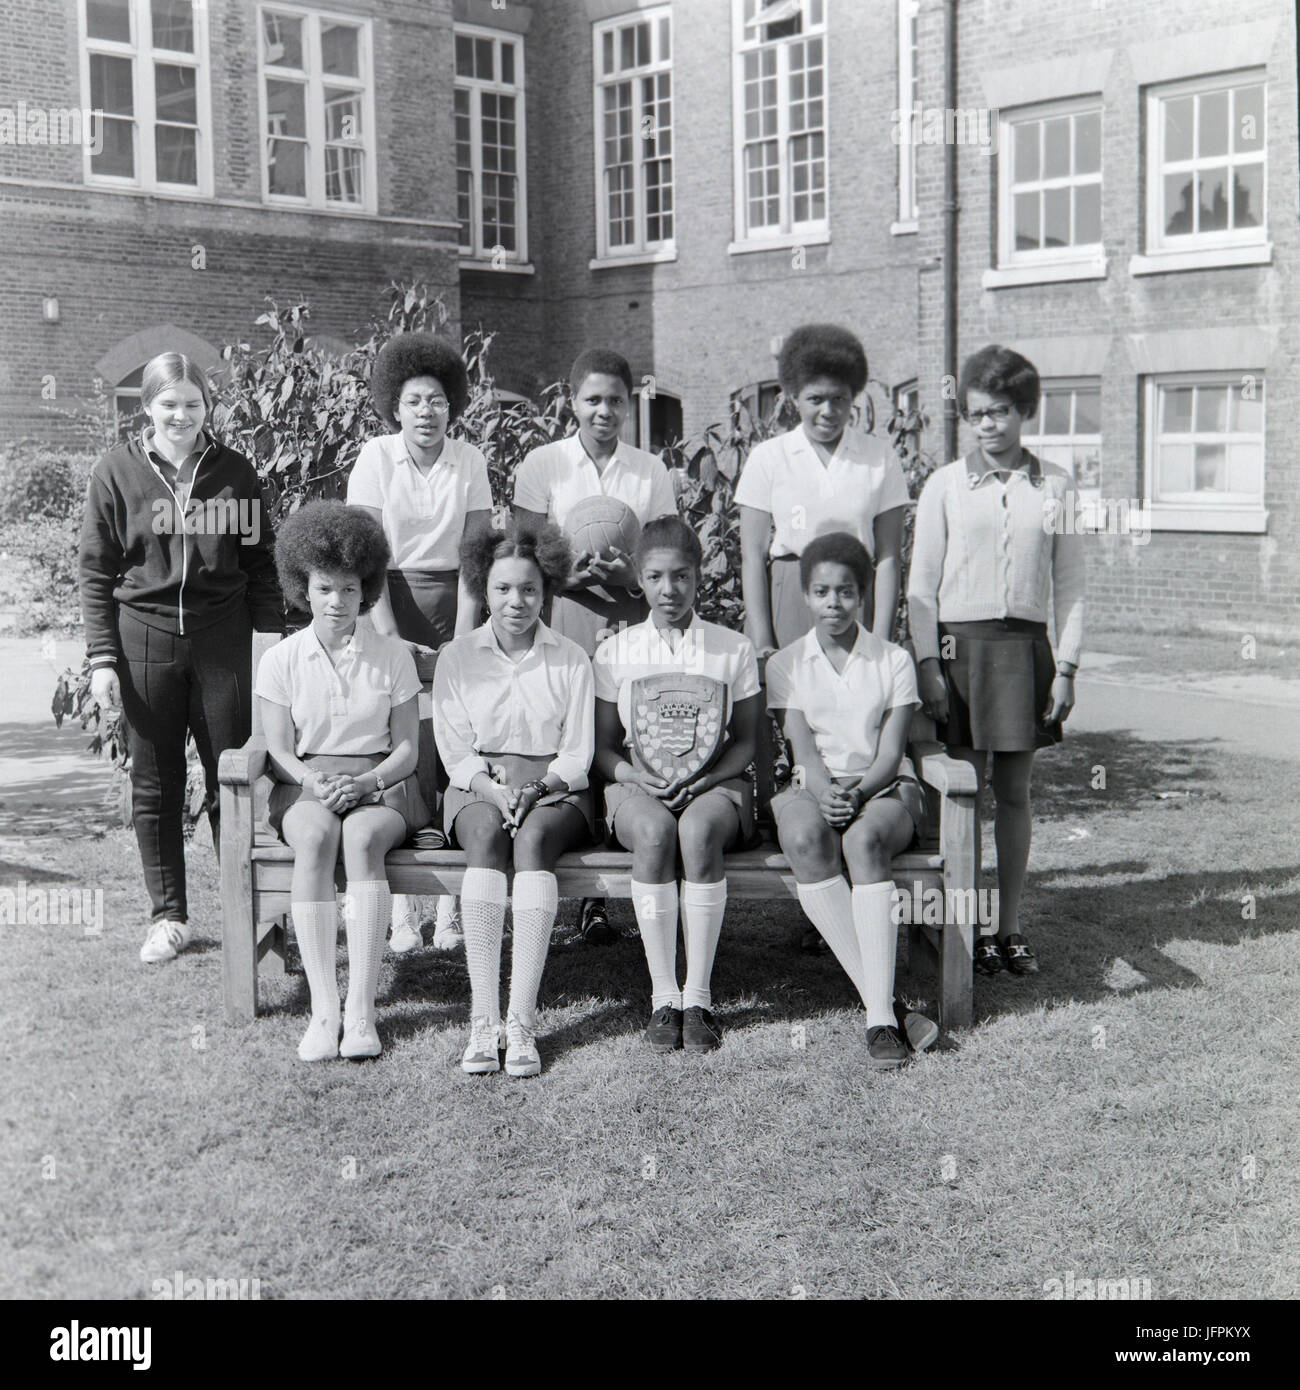 Une équipe de netball Netball senior dans la ligue de Londres au cours des années 1970. Équipe est composée principalement de noir, afro-caribéenne les filles. Banque D'Images